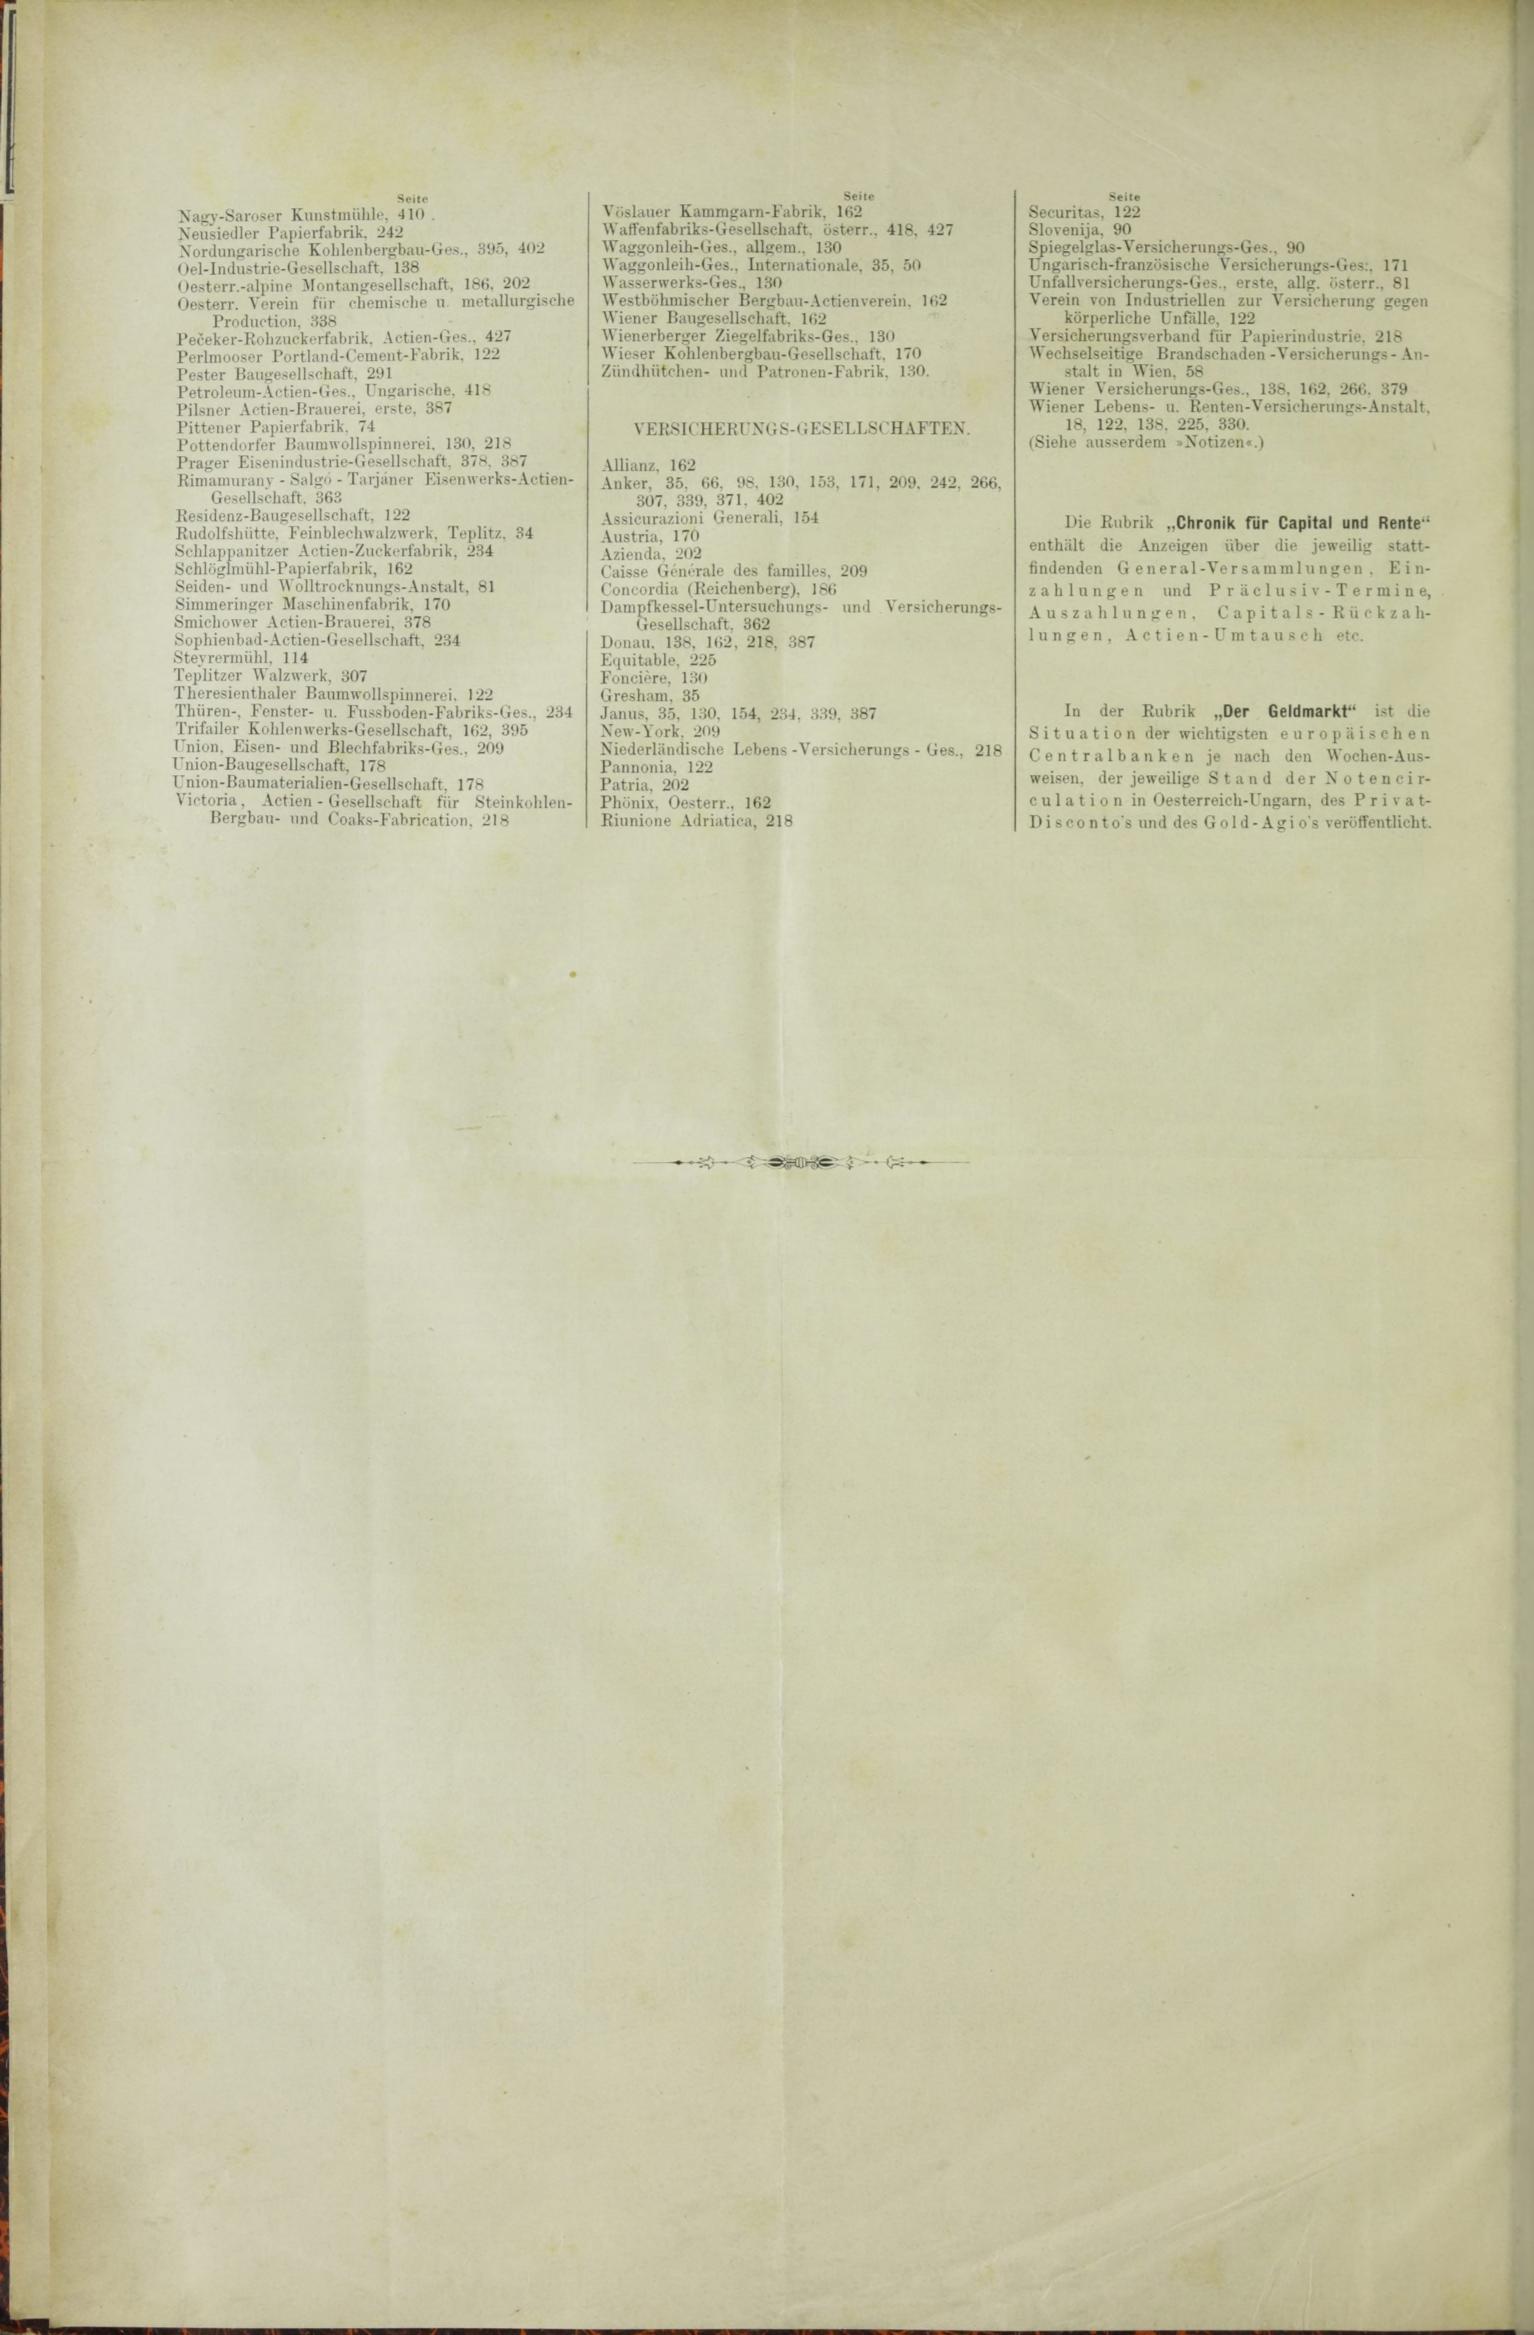 Der Tresor 01.01.1885 - Seite 12